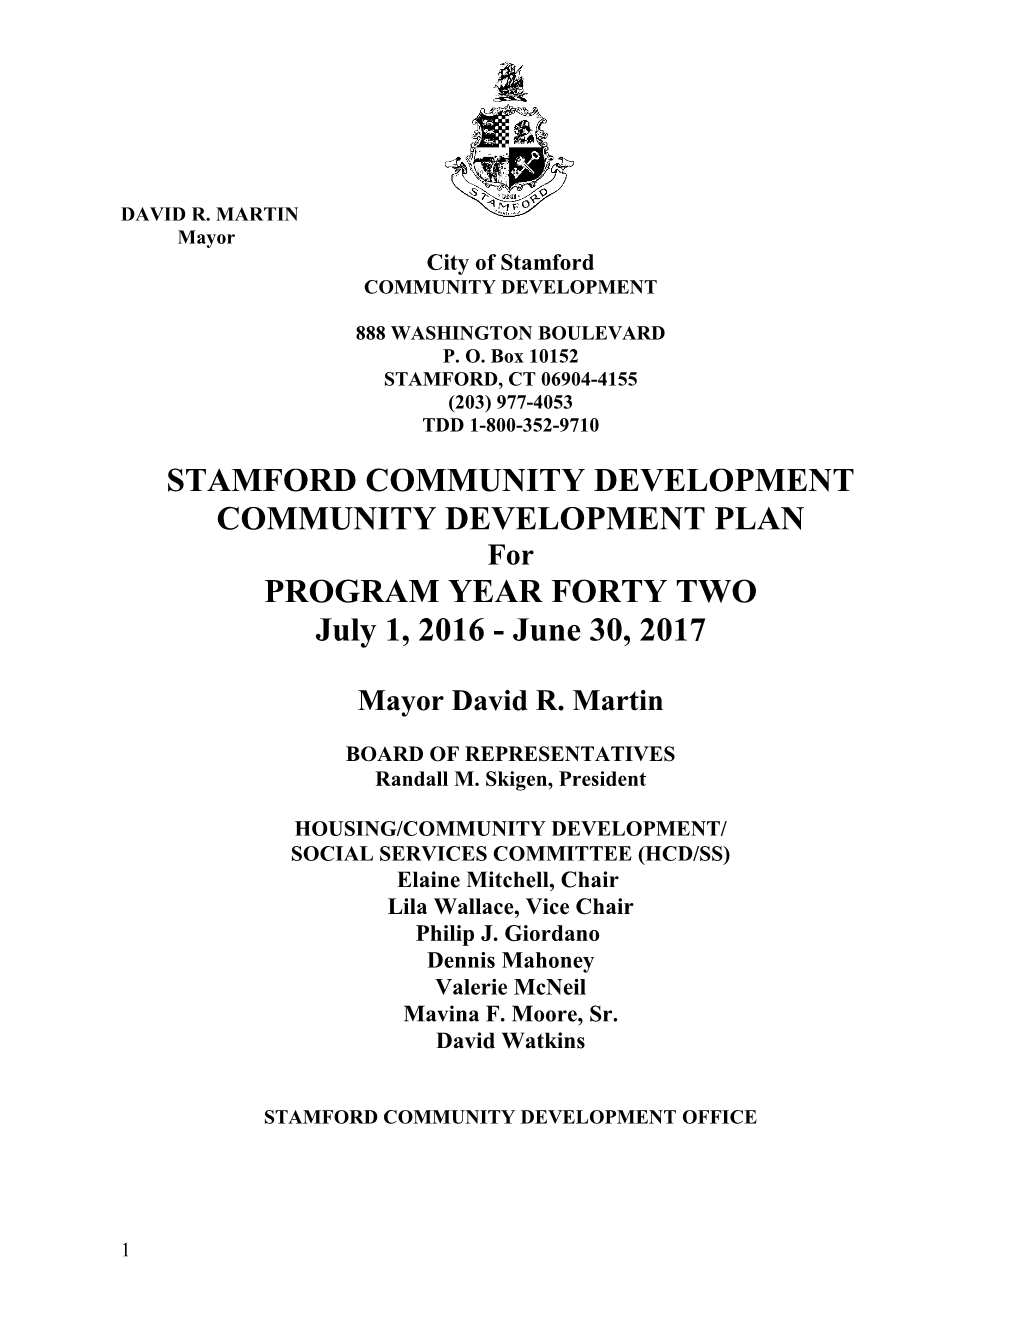 Stamford Community Development